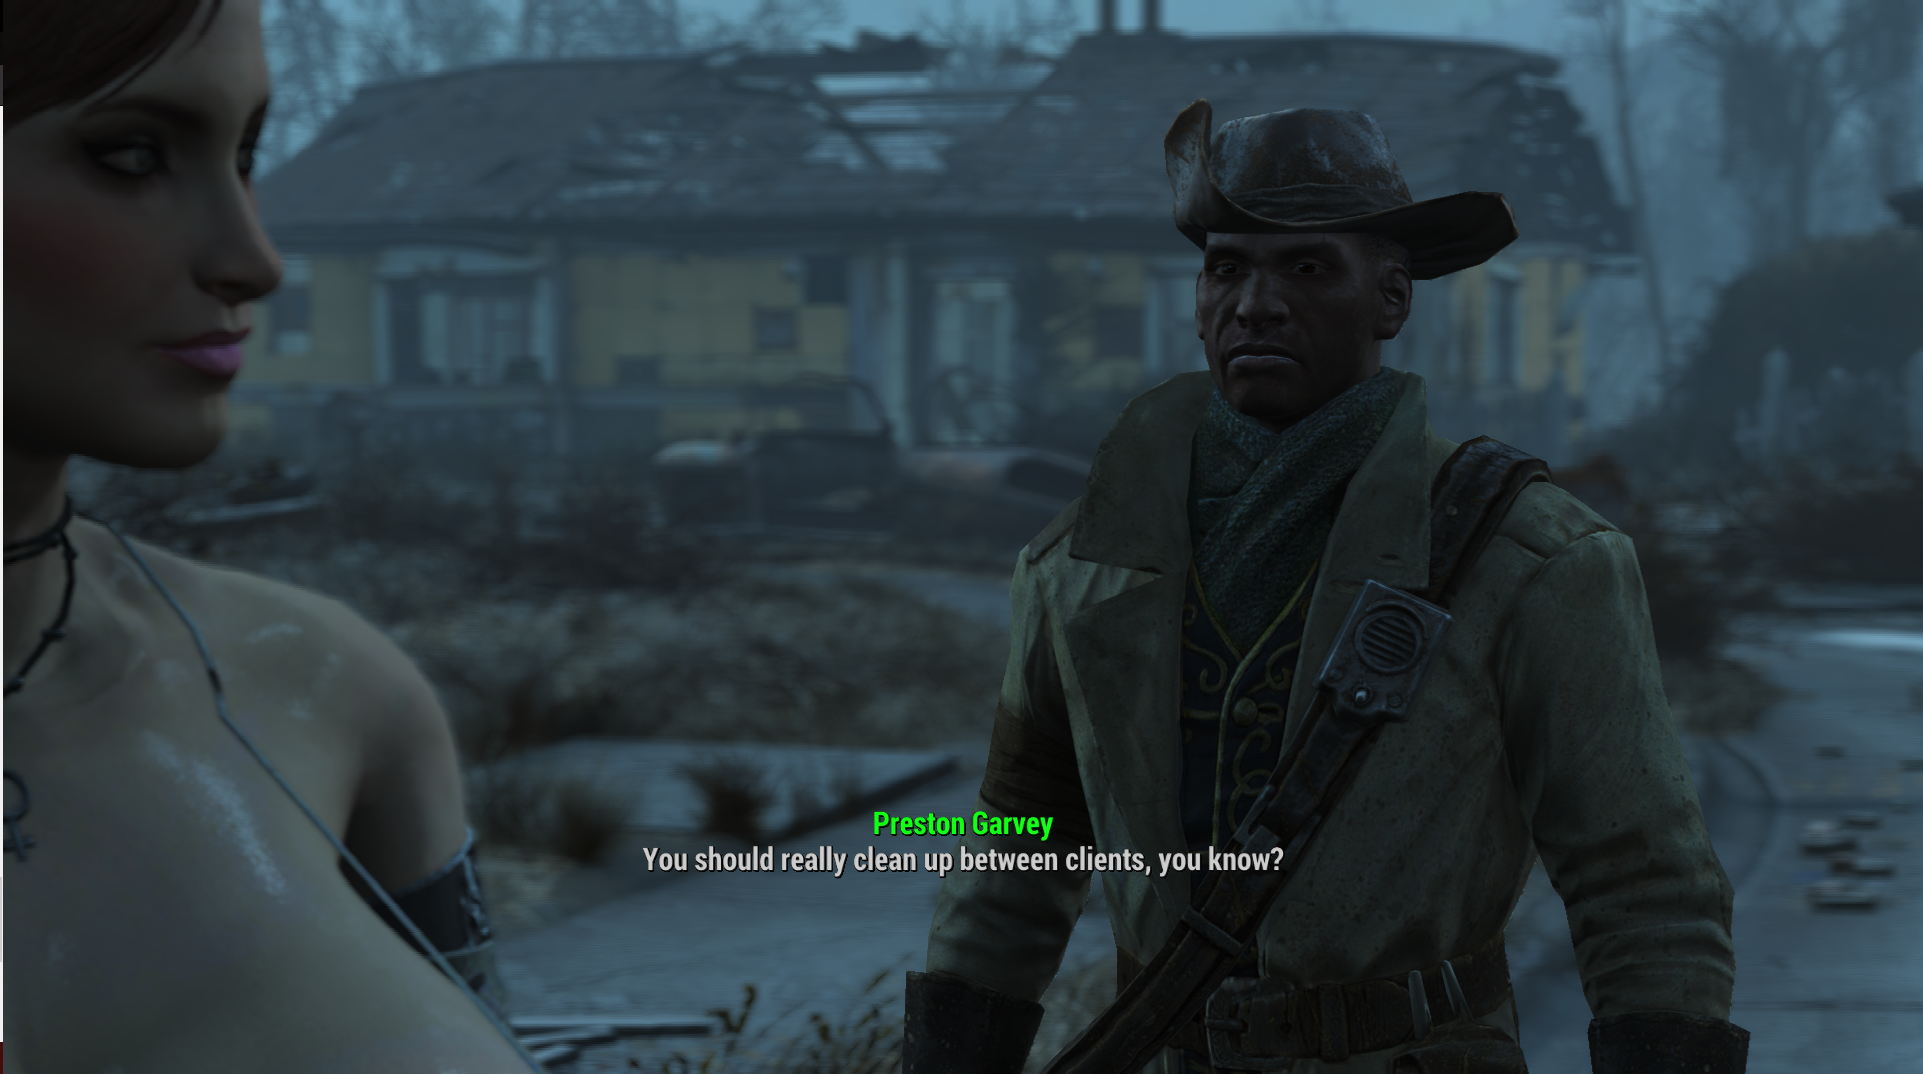 Fallout 4 престон гарви обиделся фото 49